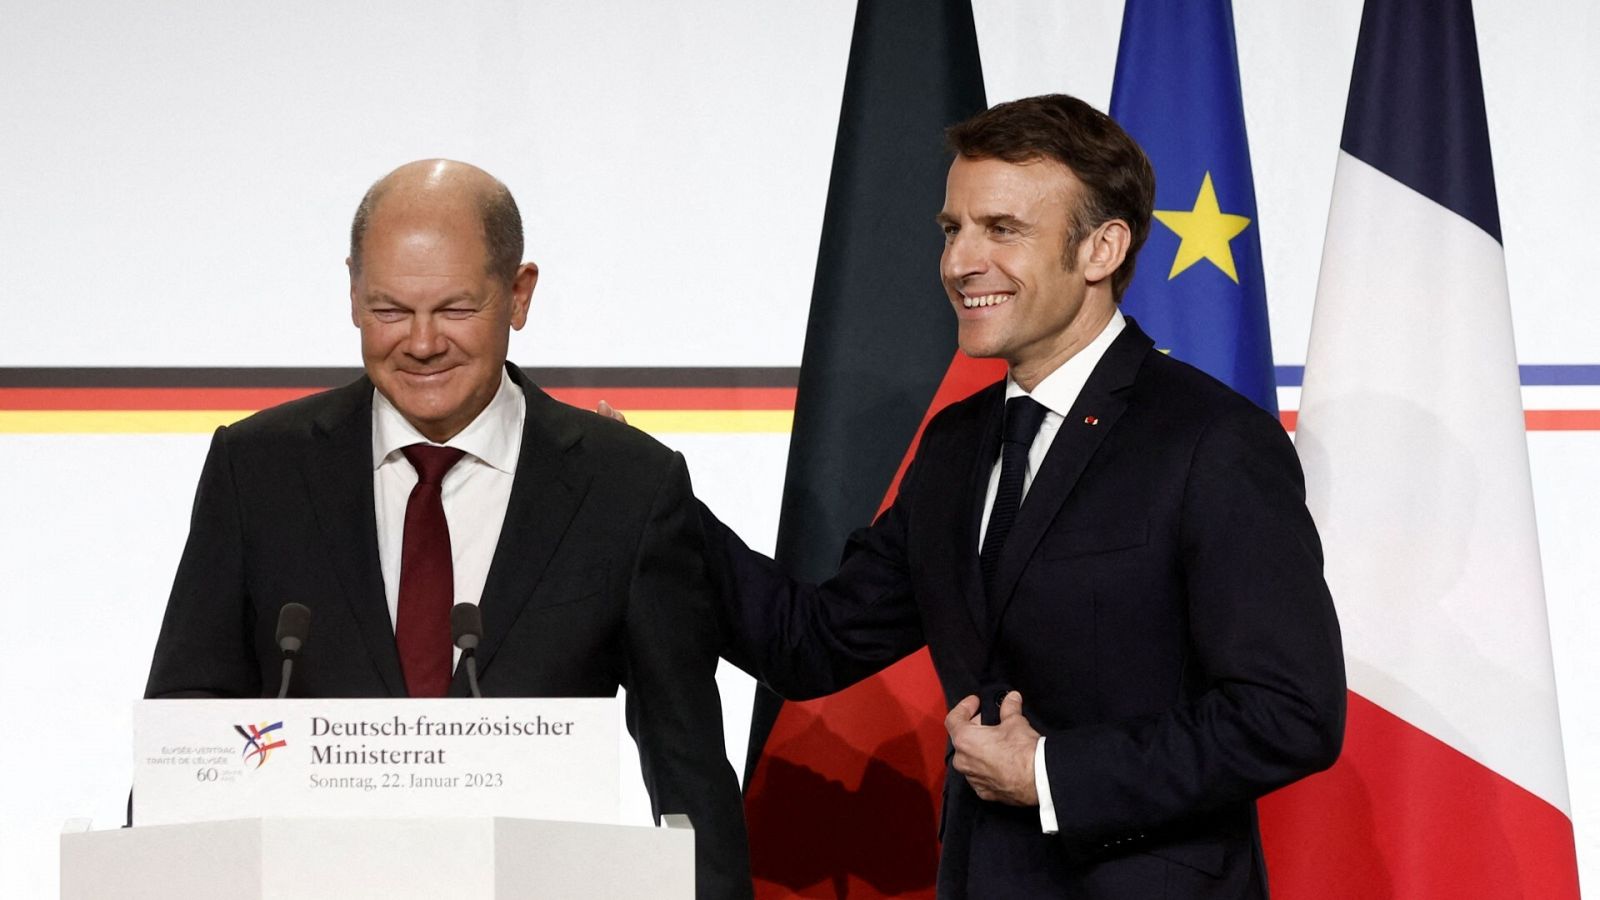 El canciller alemán, Olaf Scholz, y el primer ministro francés, Emmanuel Macron, durante la conferencia de prensa posterior al Consejo de Ministros franco-alemán.